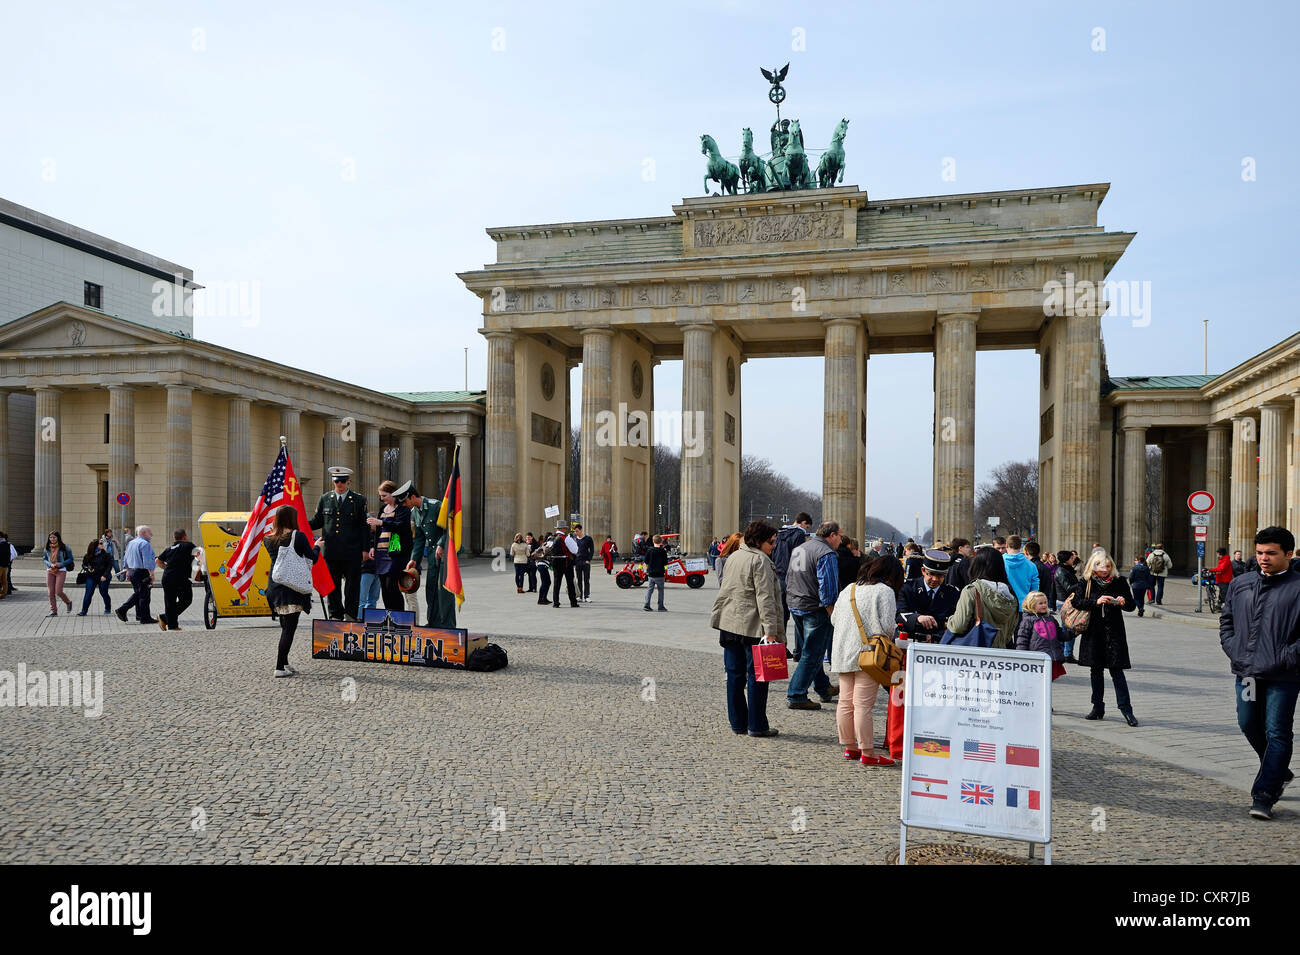 Les touristes et les artistes de rue sur la Pariser Platz, Porte de Brandebourg, Berlin, Germany, Europe Banque D'Images